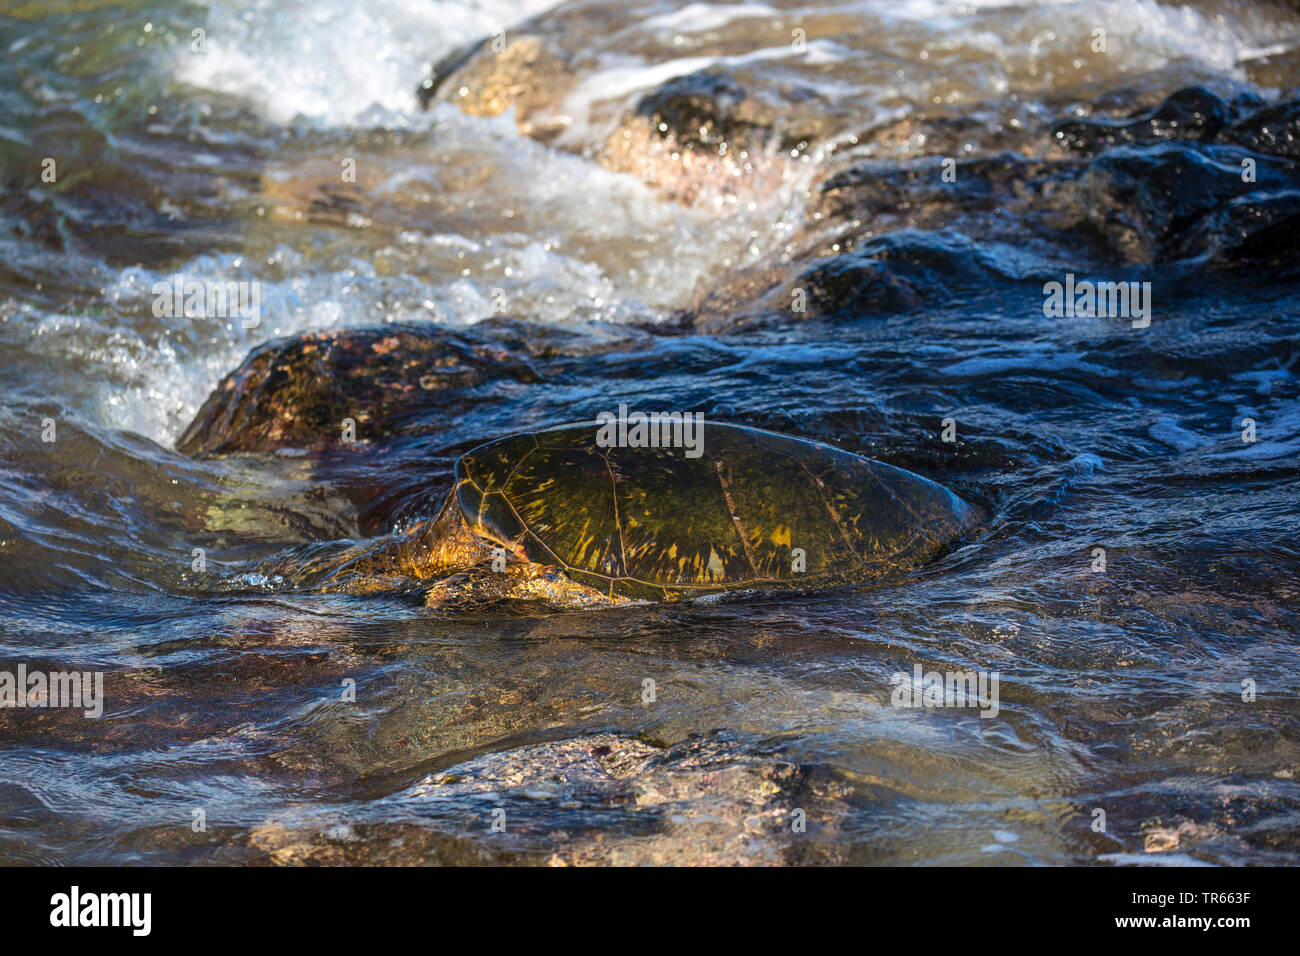 La tortue verte, tortue, tortue viande rock (Chelonia mydas), nourrir les algues dans la zone de ressac de laval les roches, USA, Utah, Maui, Kihei Banque D'Images